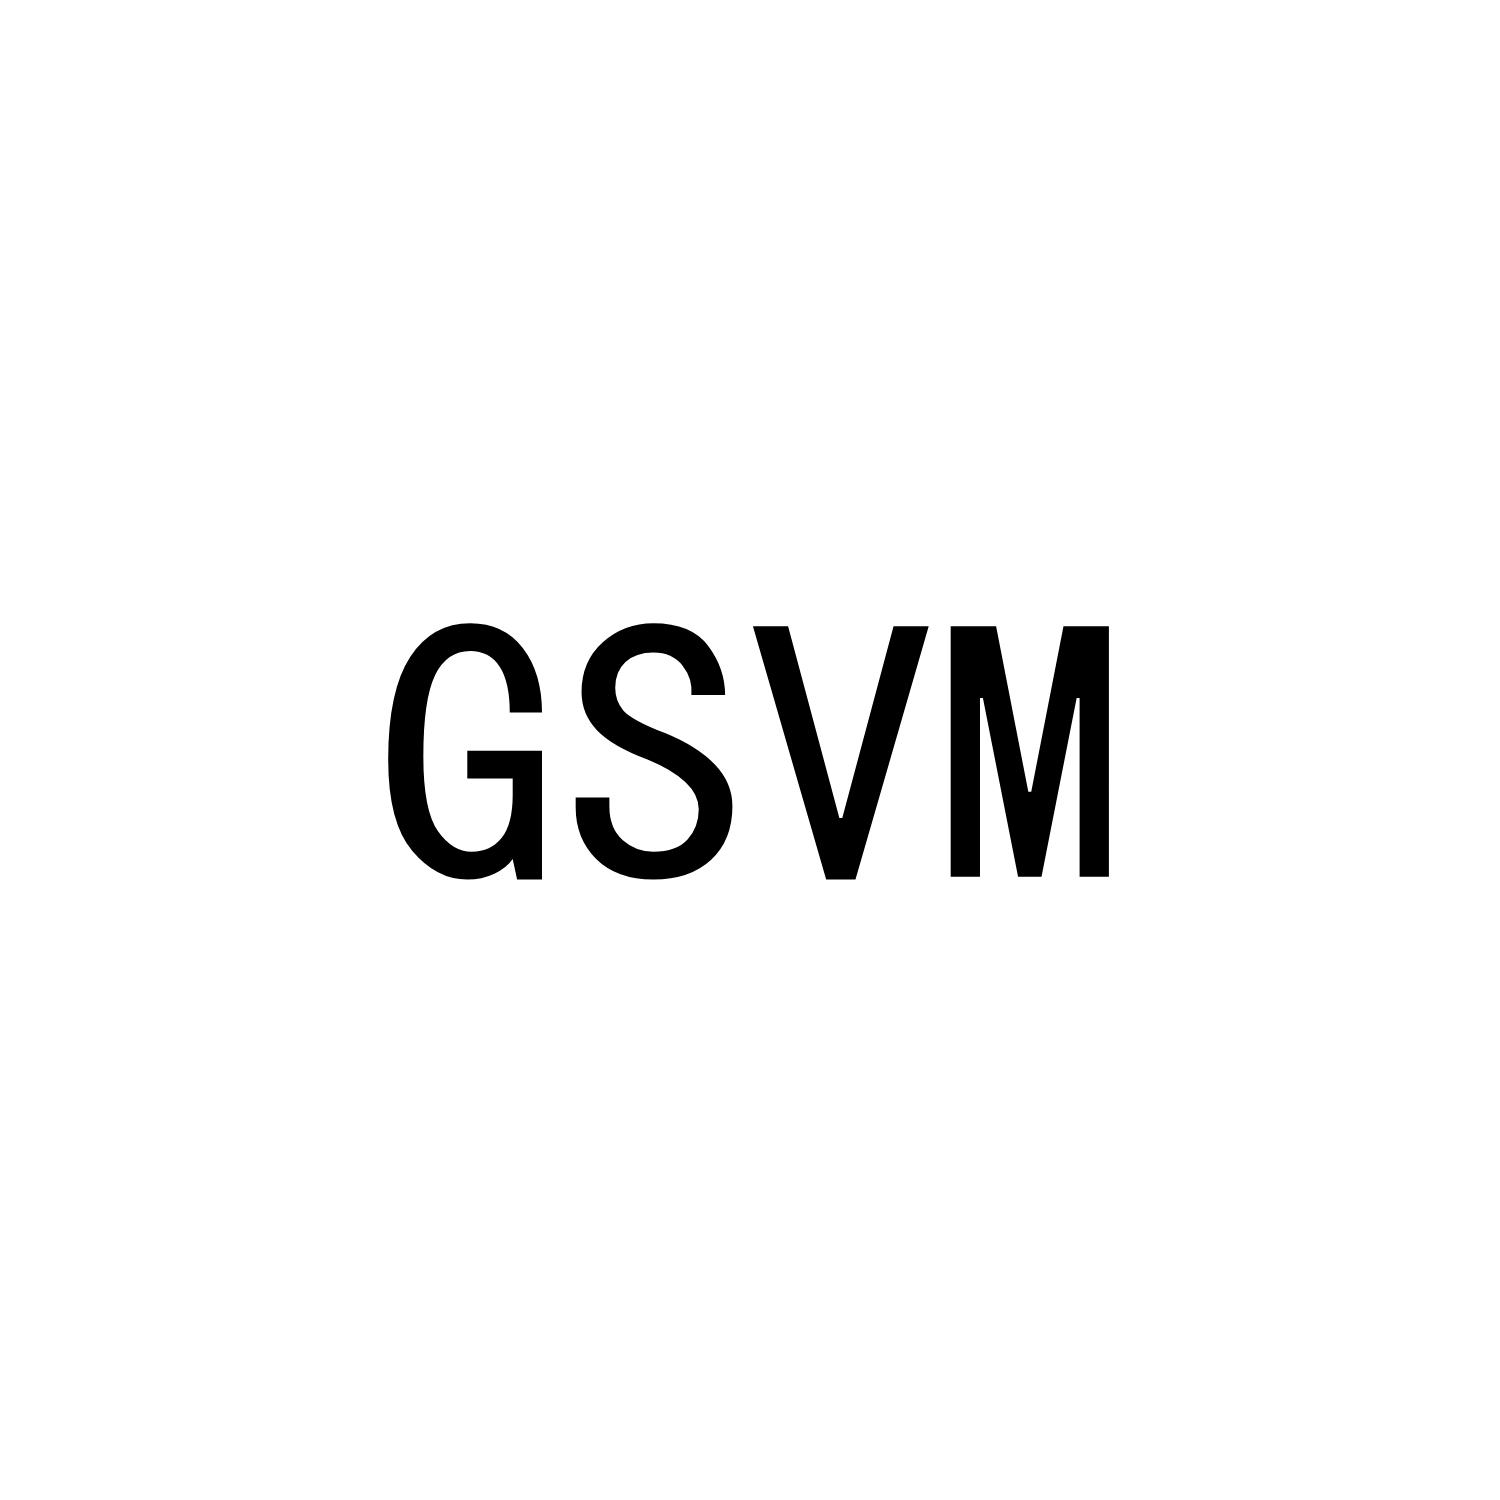 GSVM